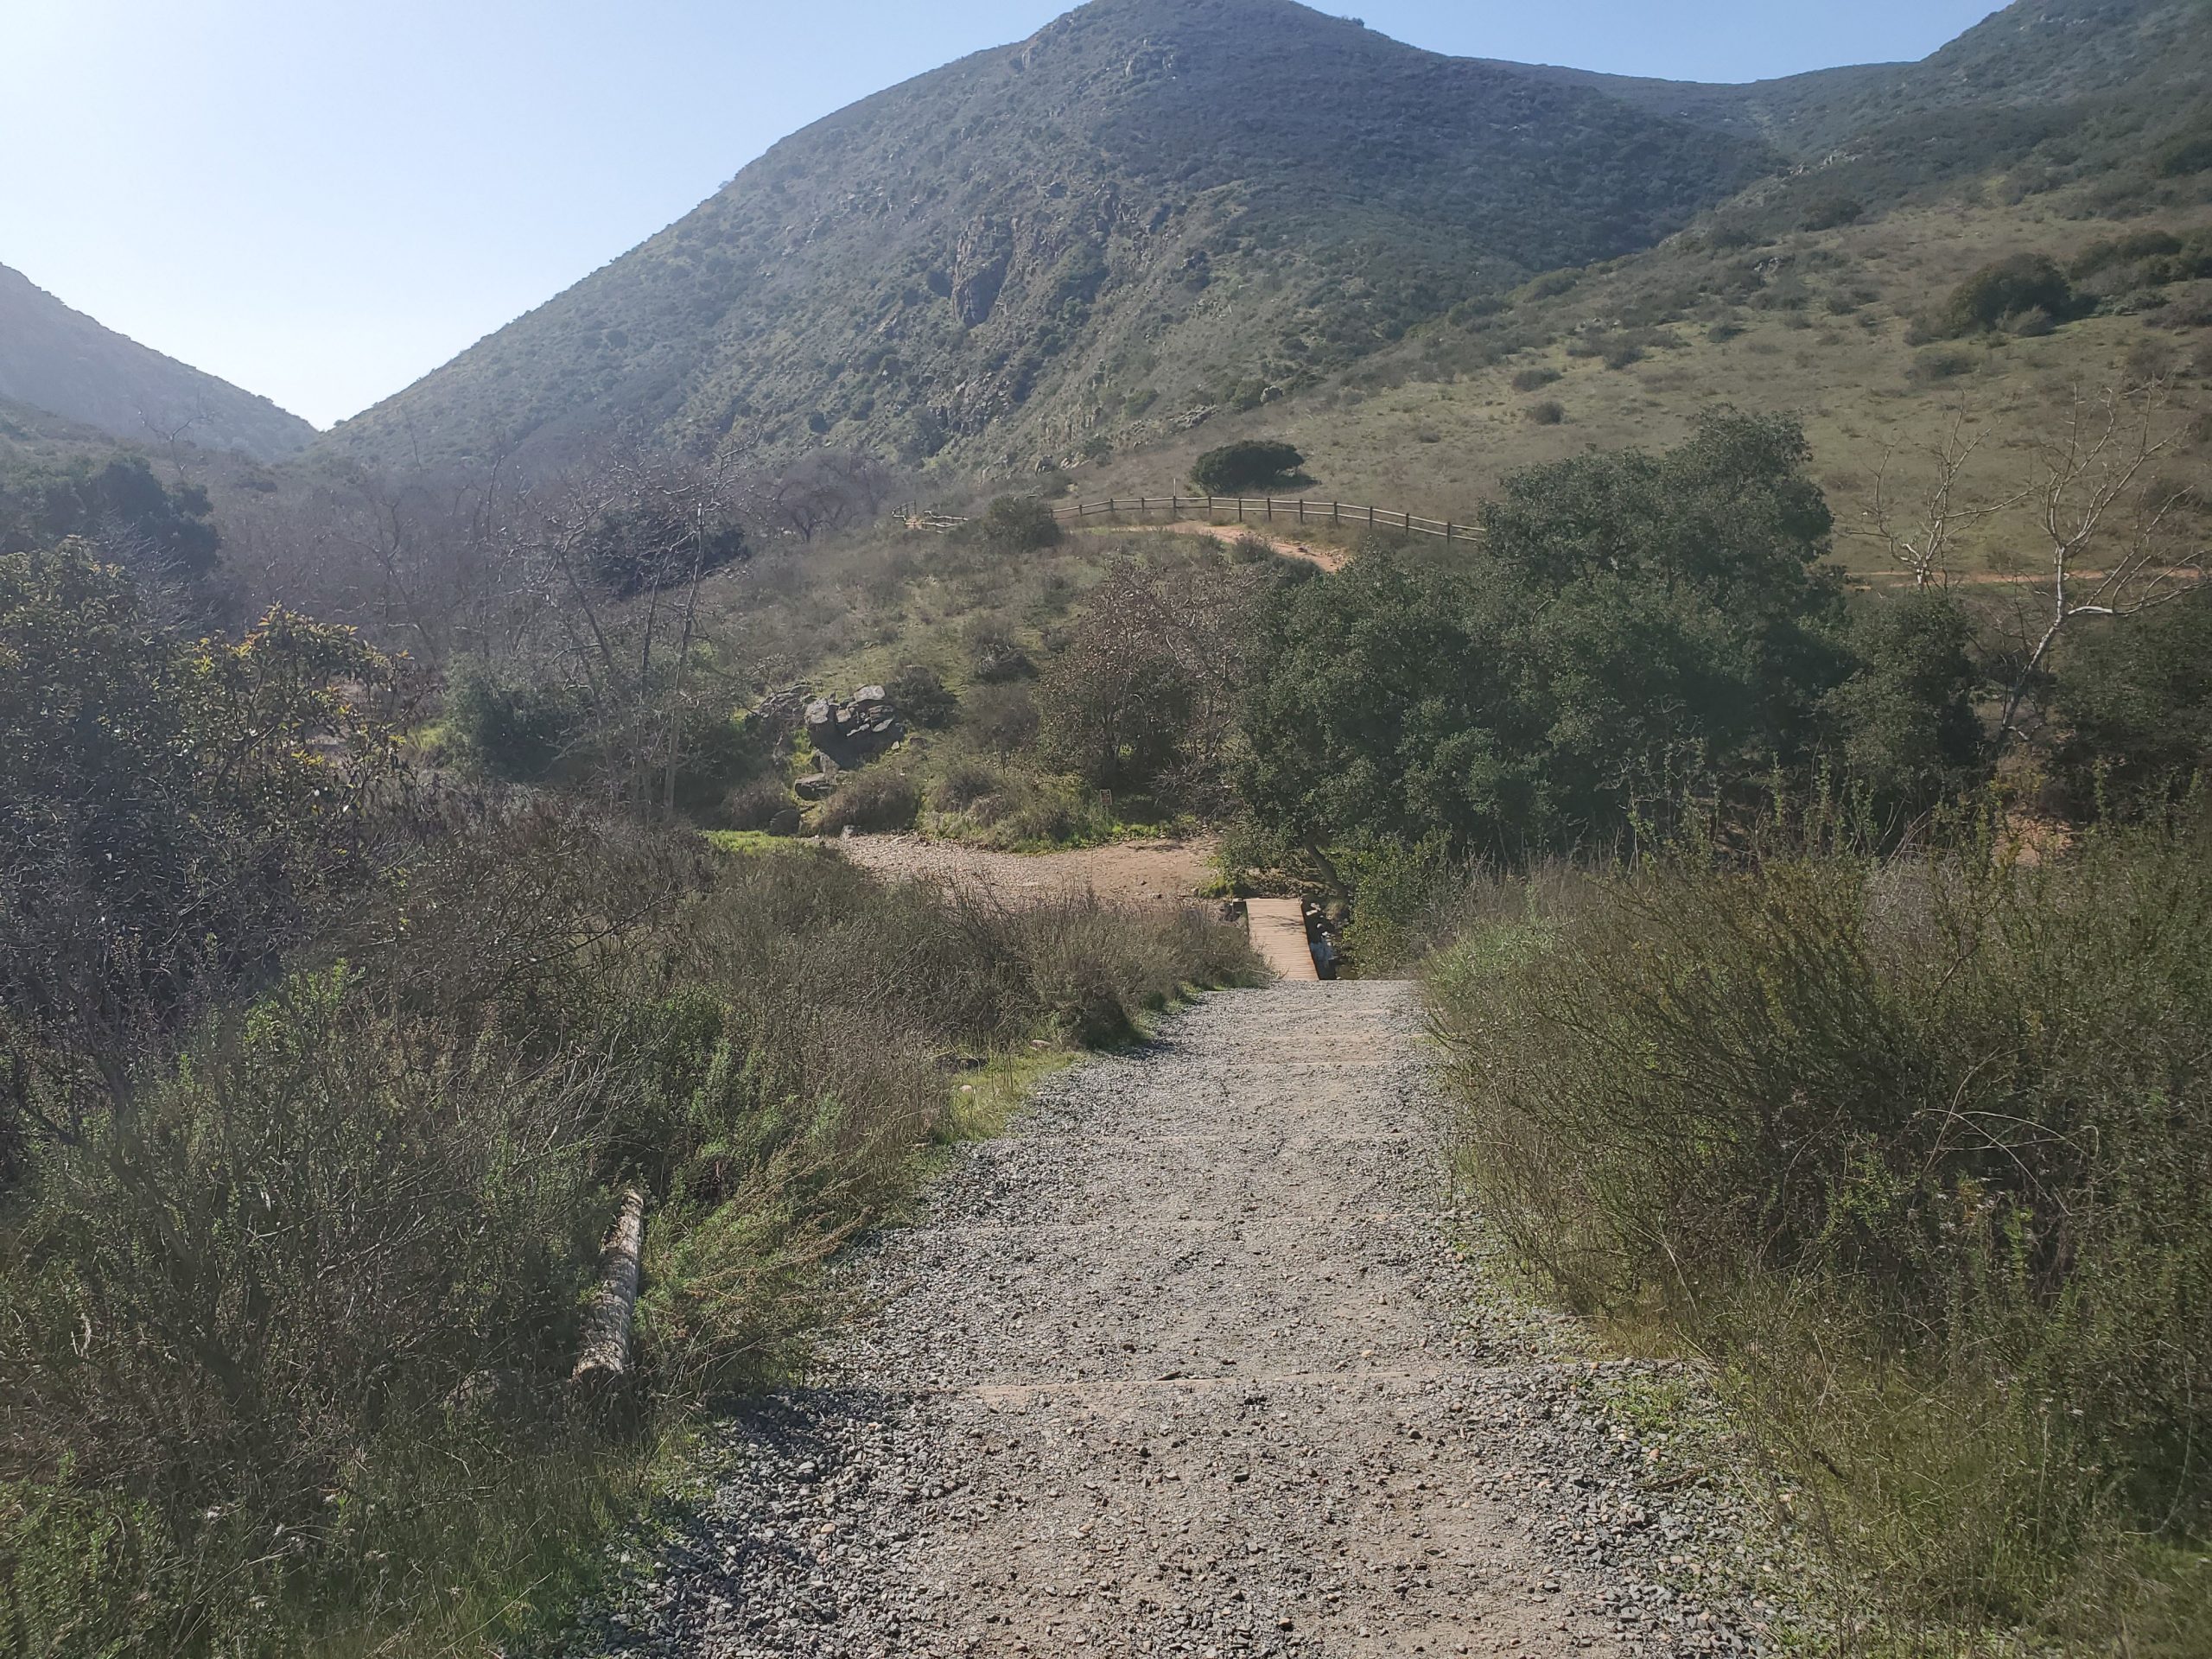 Oak Canyon Trail